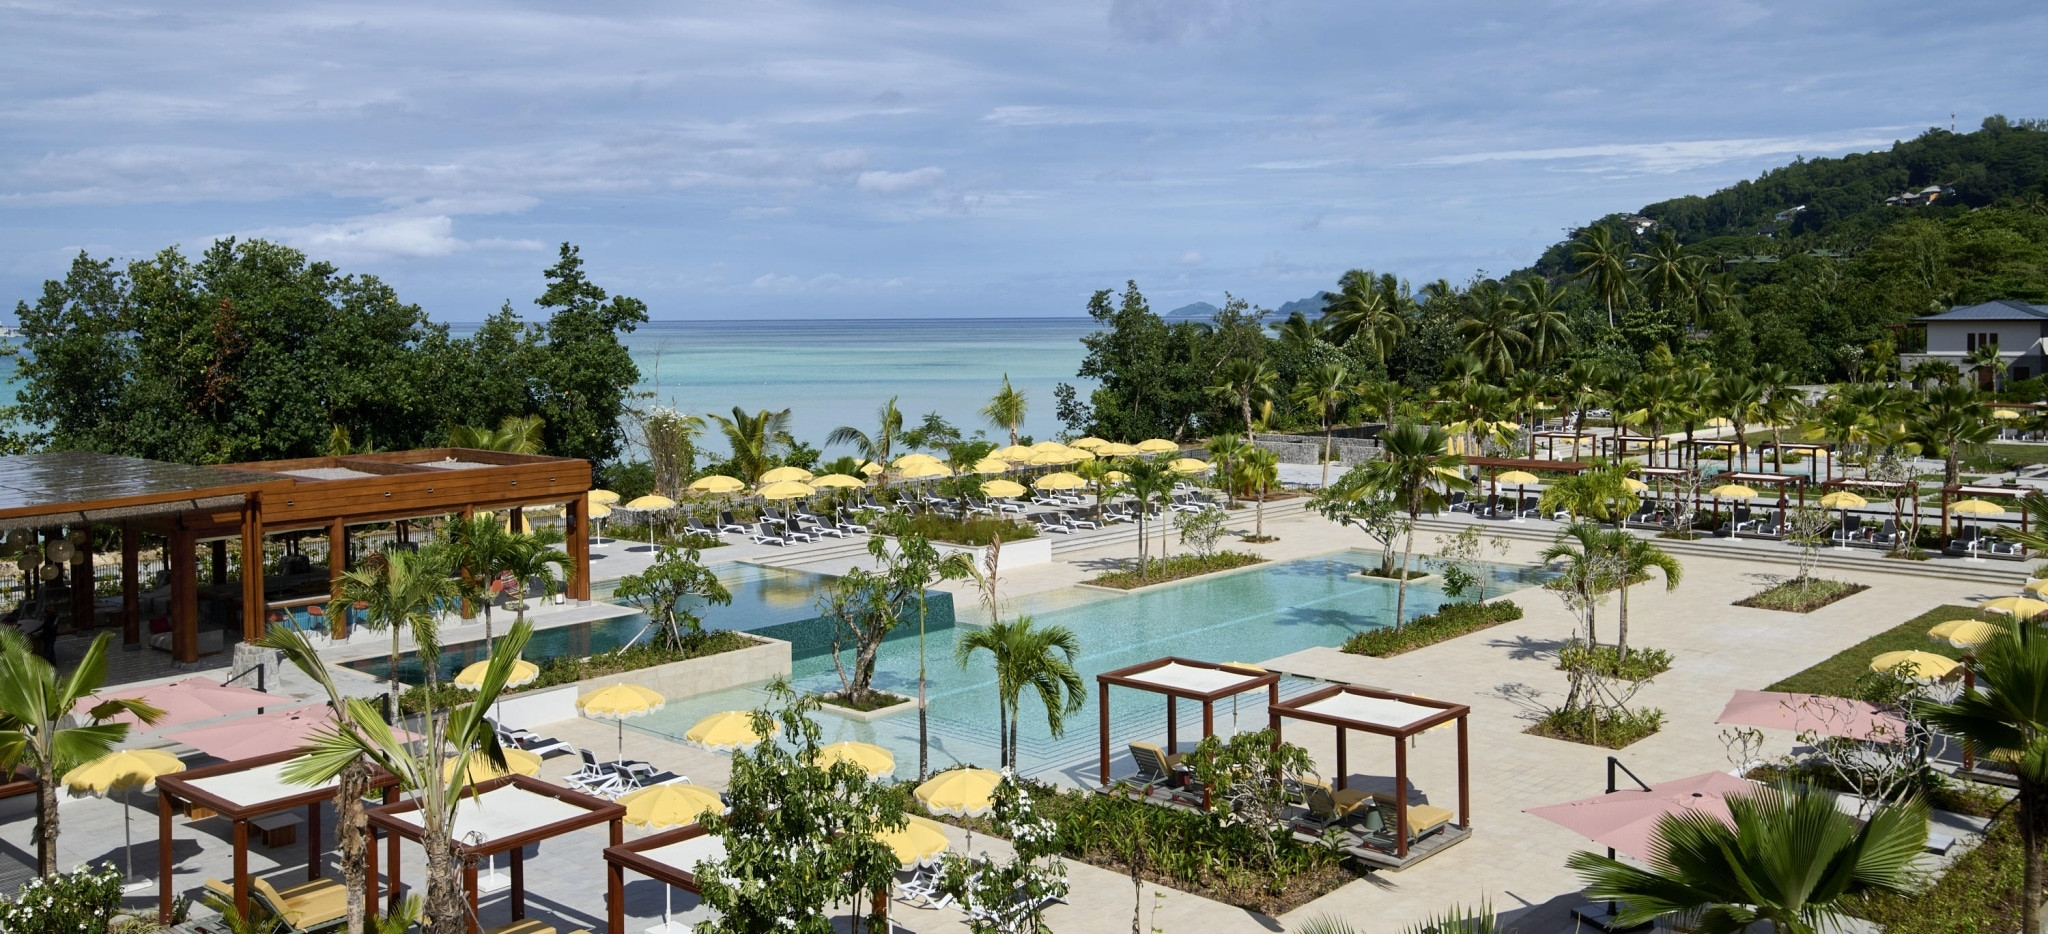 Der Poolbereich des Hotels Hilton Canopy auf den Seychellen